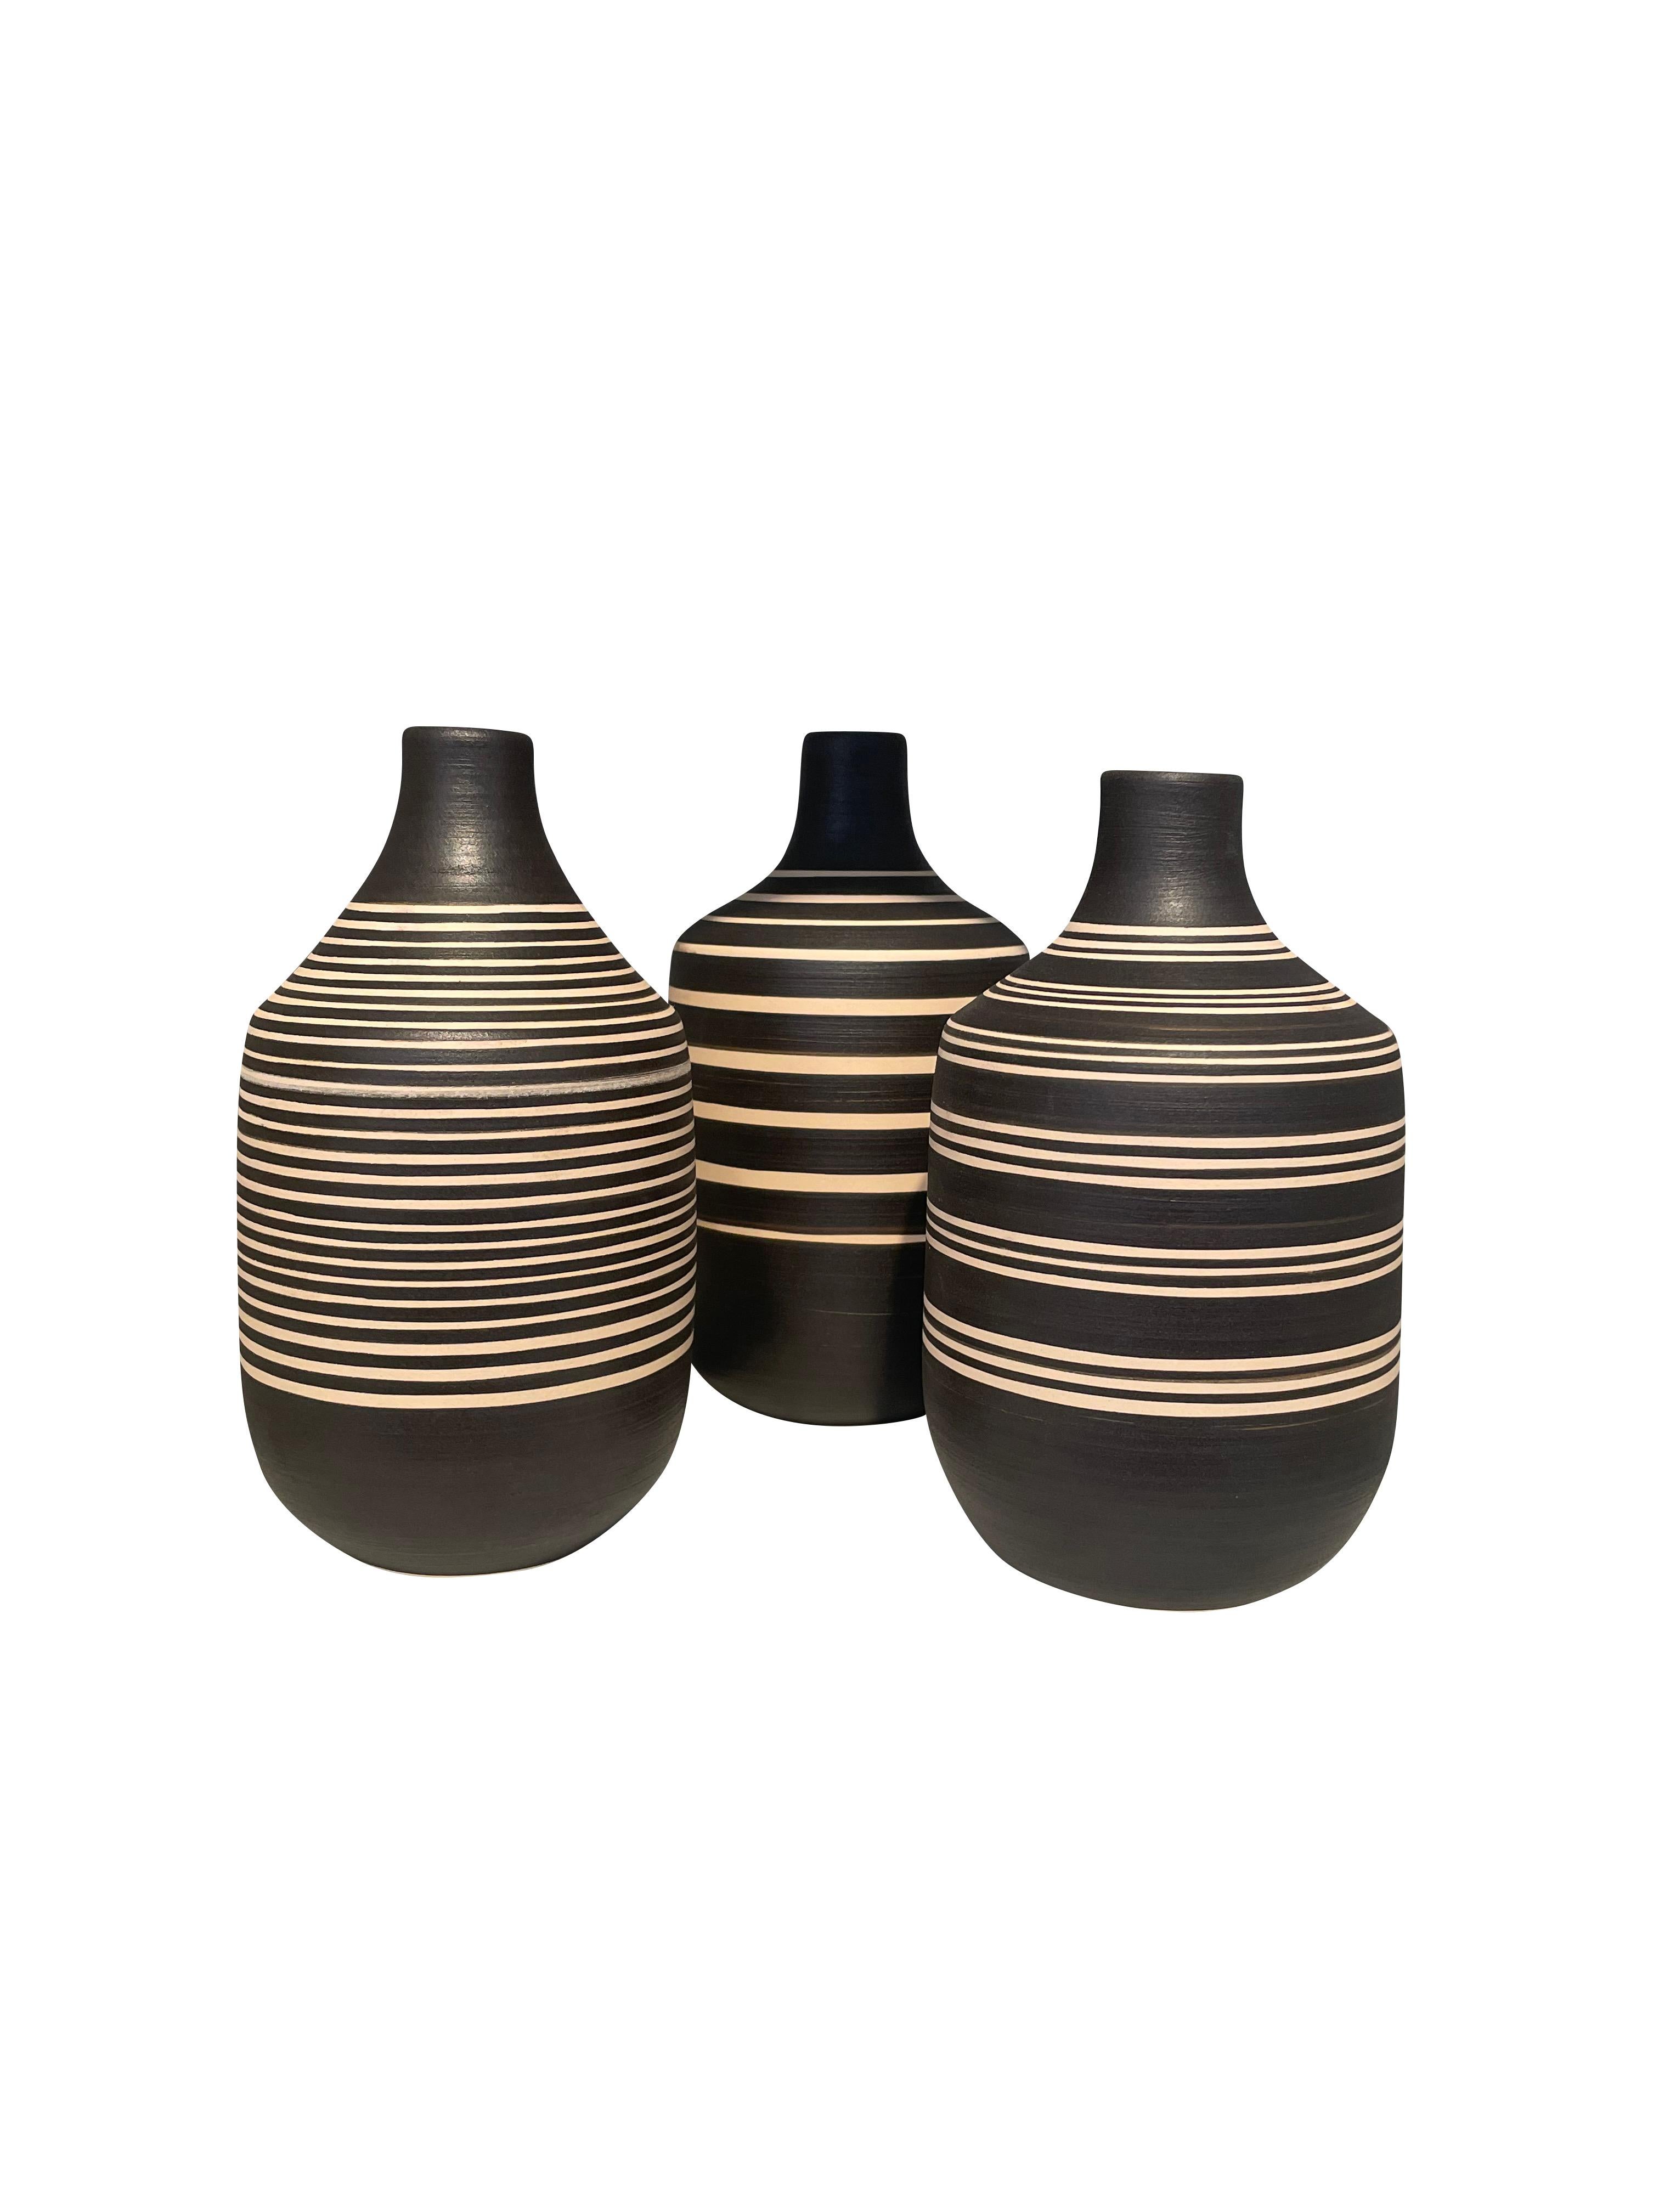 Ceramic Black And Cream Thin Striped Vase, Turkey, Contemporary For Sale